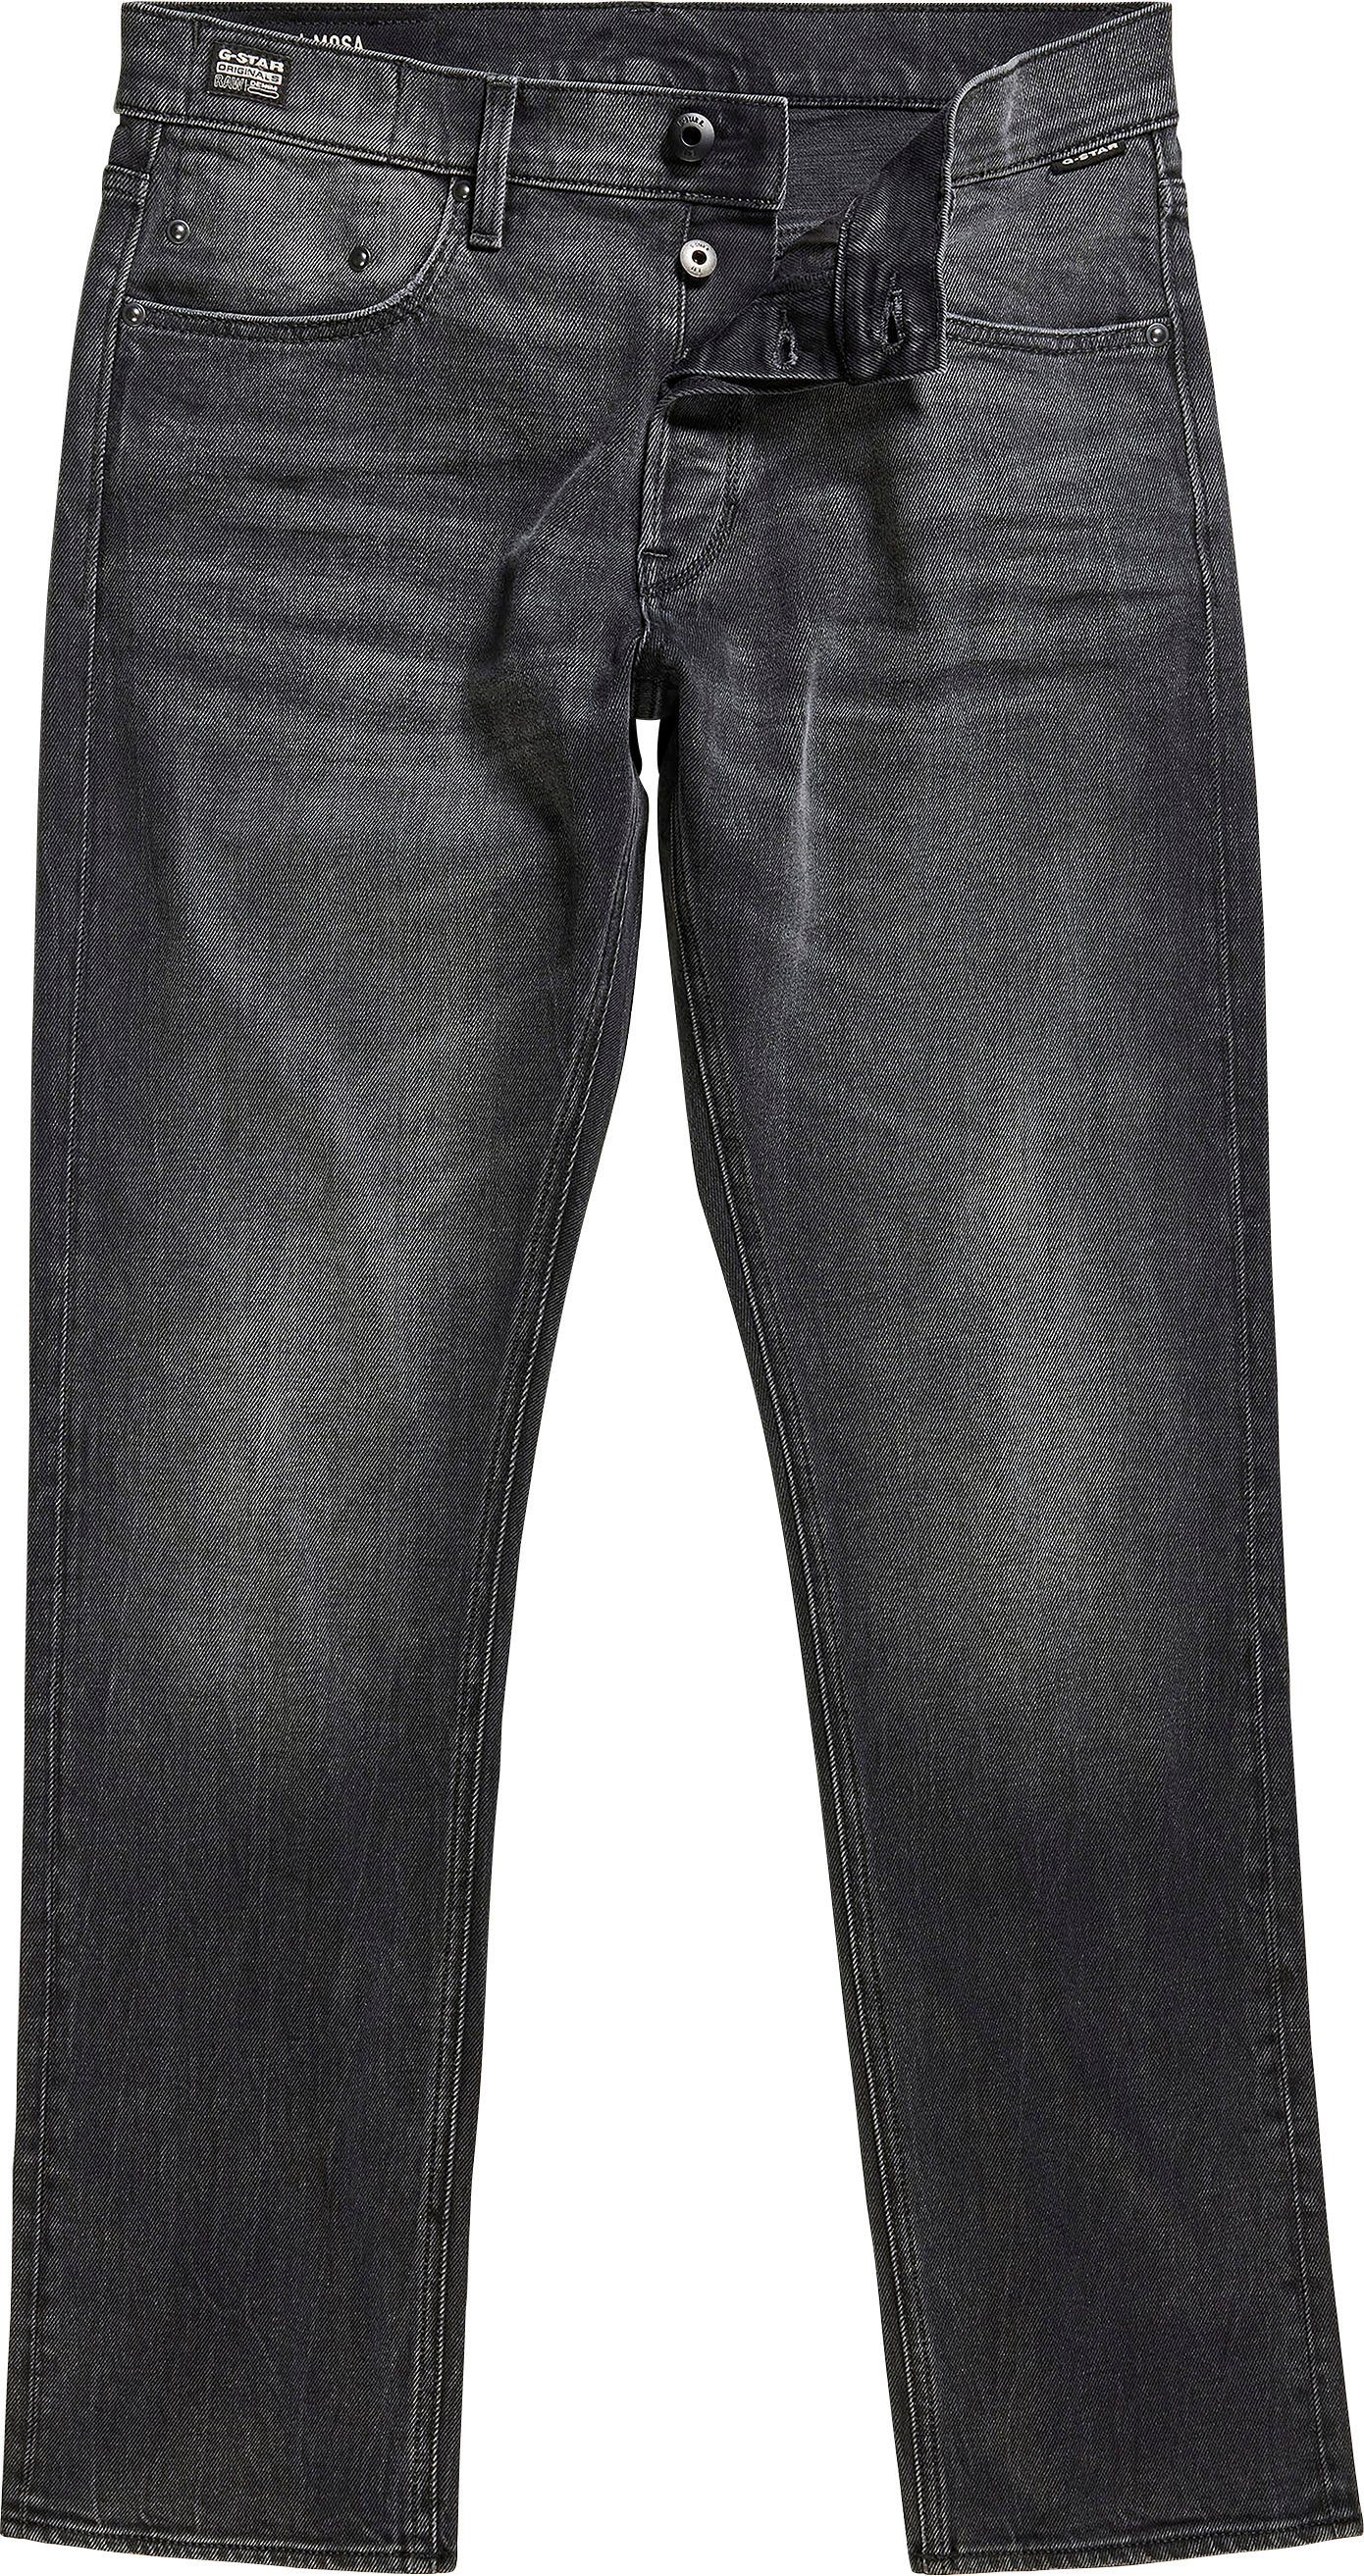 worn Straight-Jeans RAW Mosa black hellen Straight Nähten G-Star mit